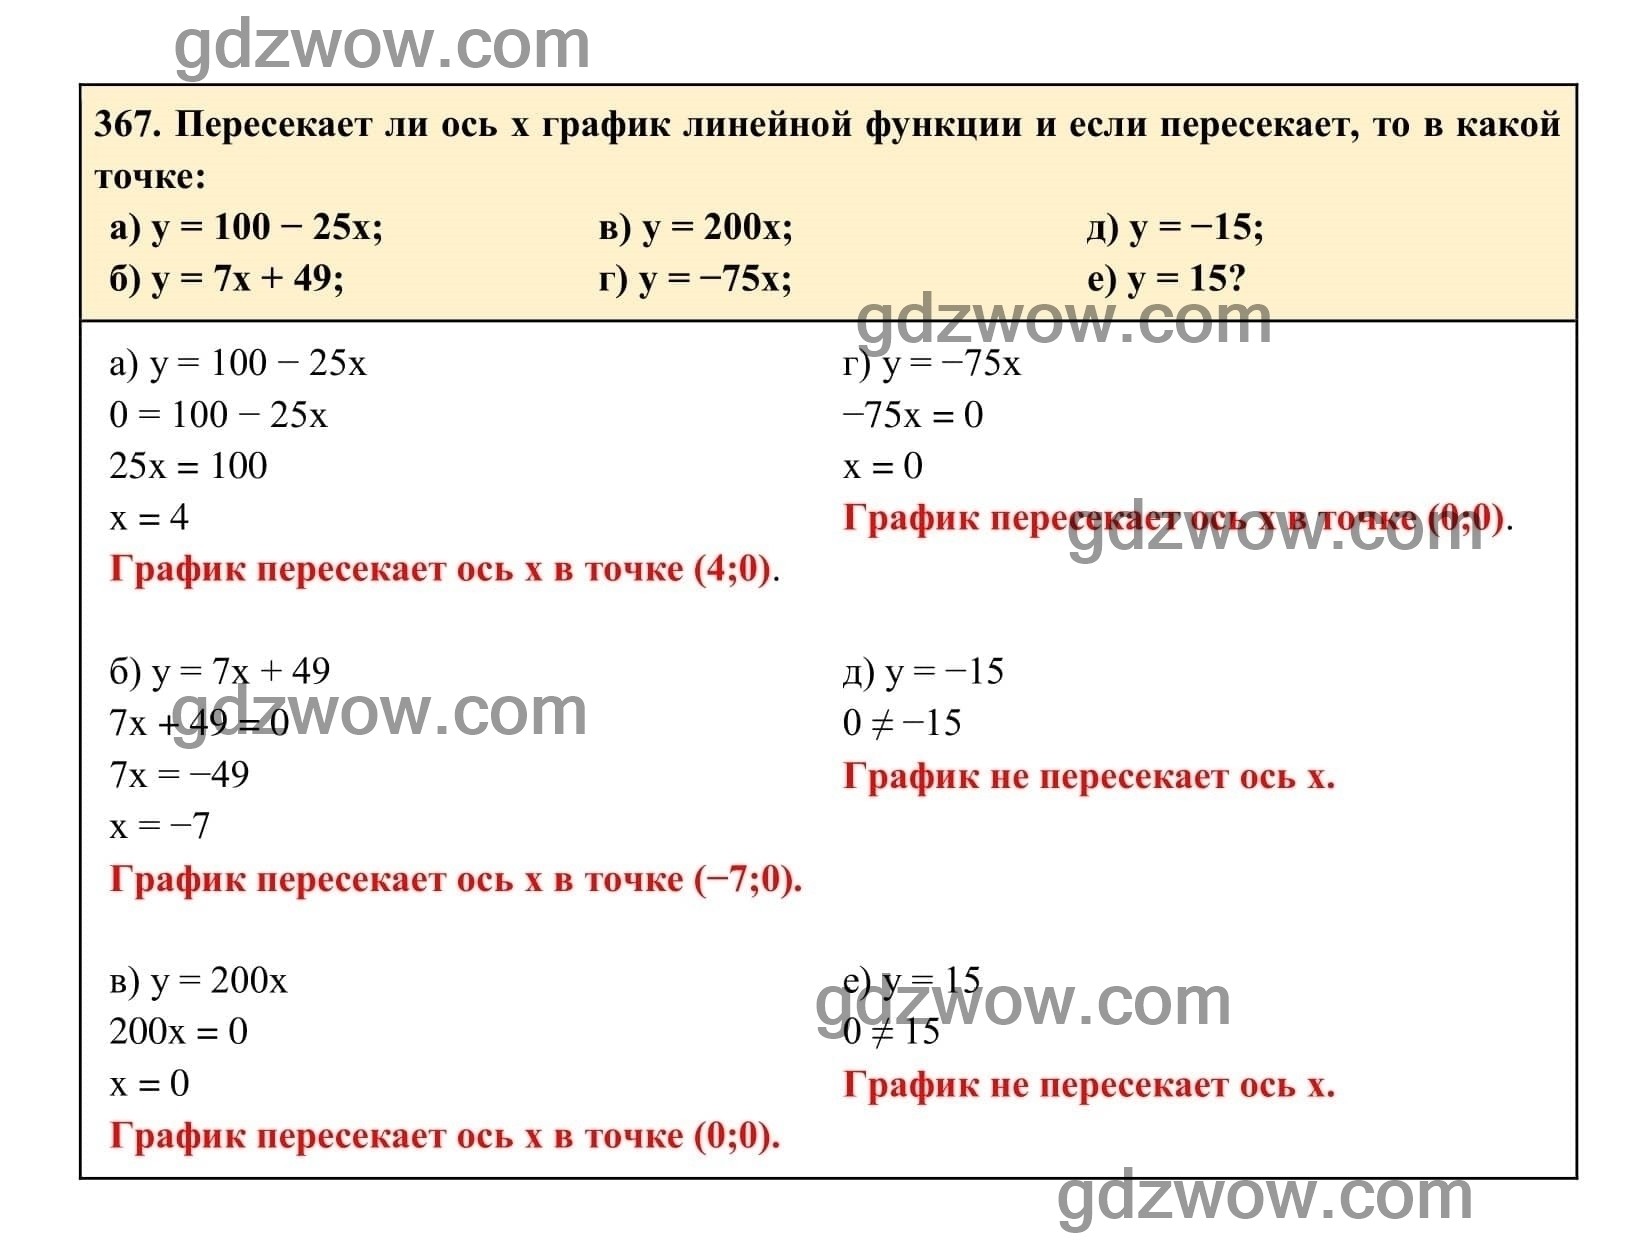 Упражнение 367 - ГДЗ по Алгебре 7 класс Учебник Макарычев (решебник) - GDZwow